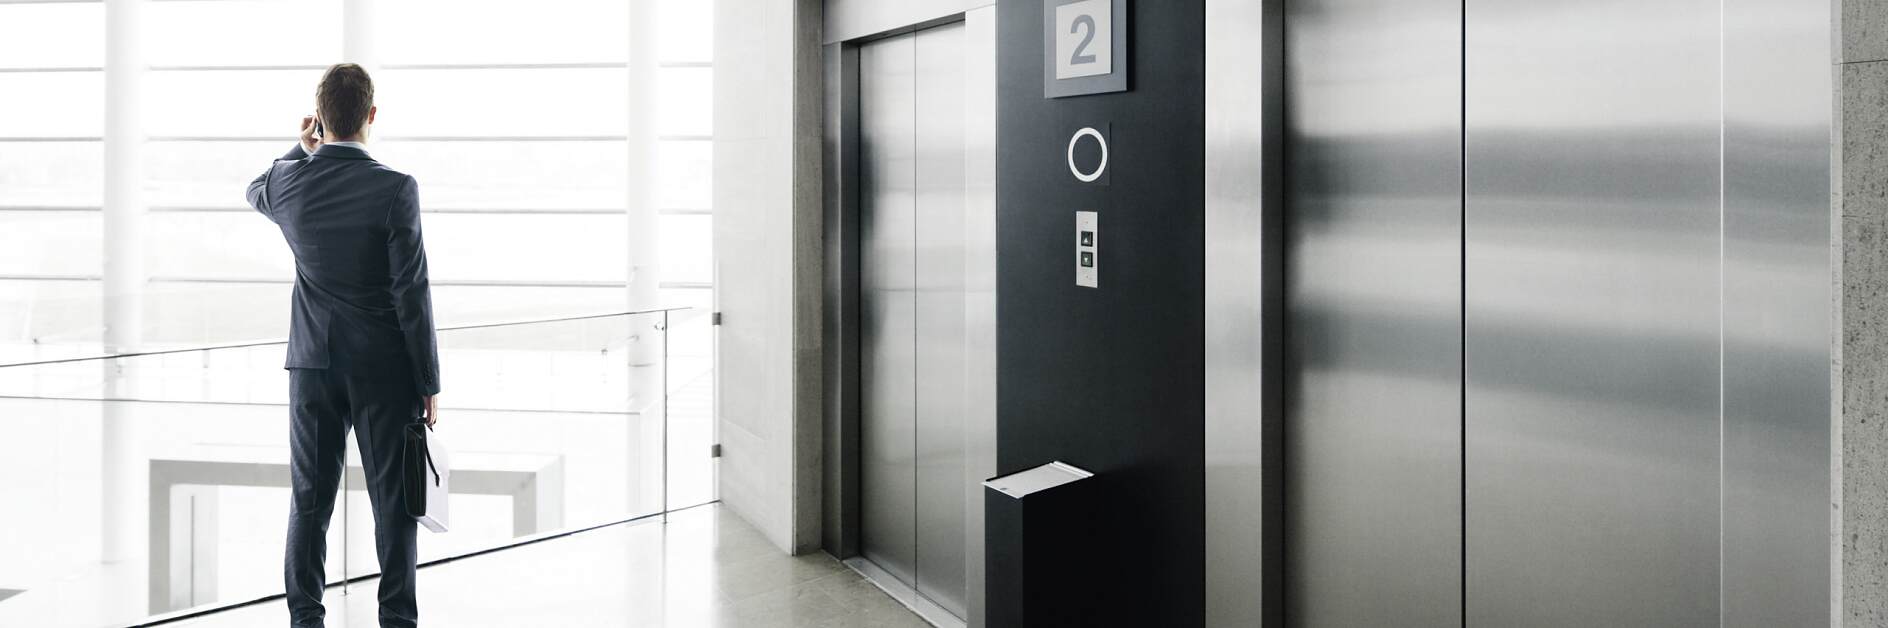 solusi tesa untuk industri lift